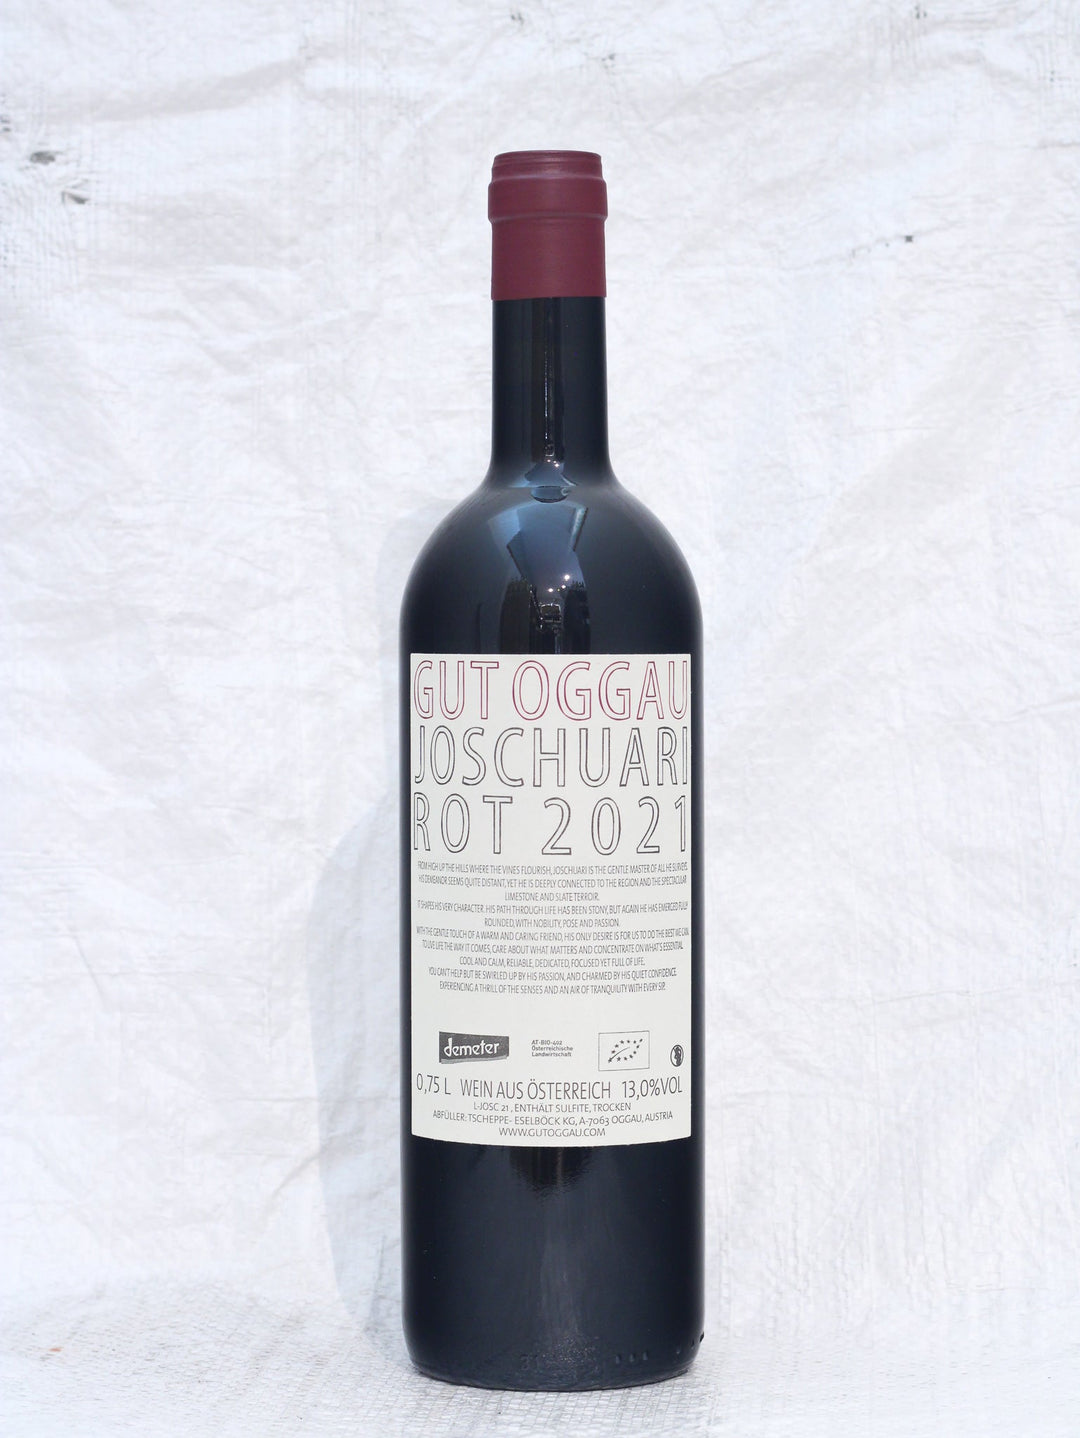 Joschuari 2021 0,75L Bio Wein von Gut Oggau